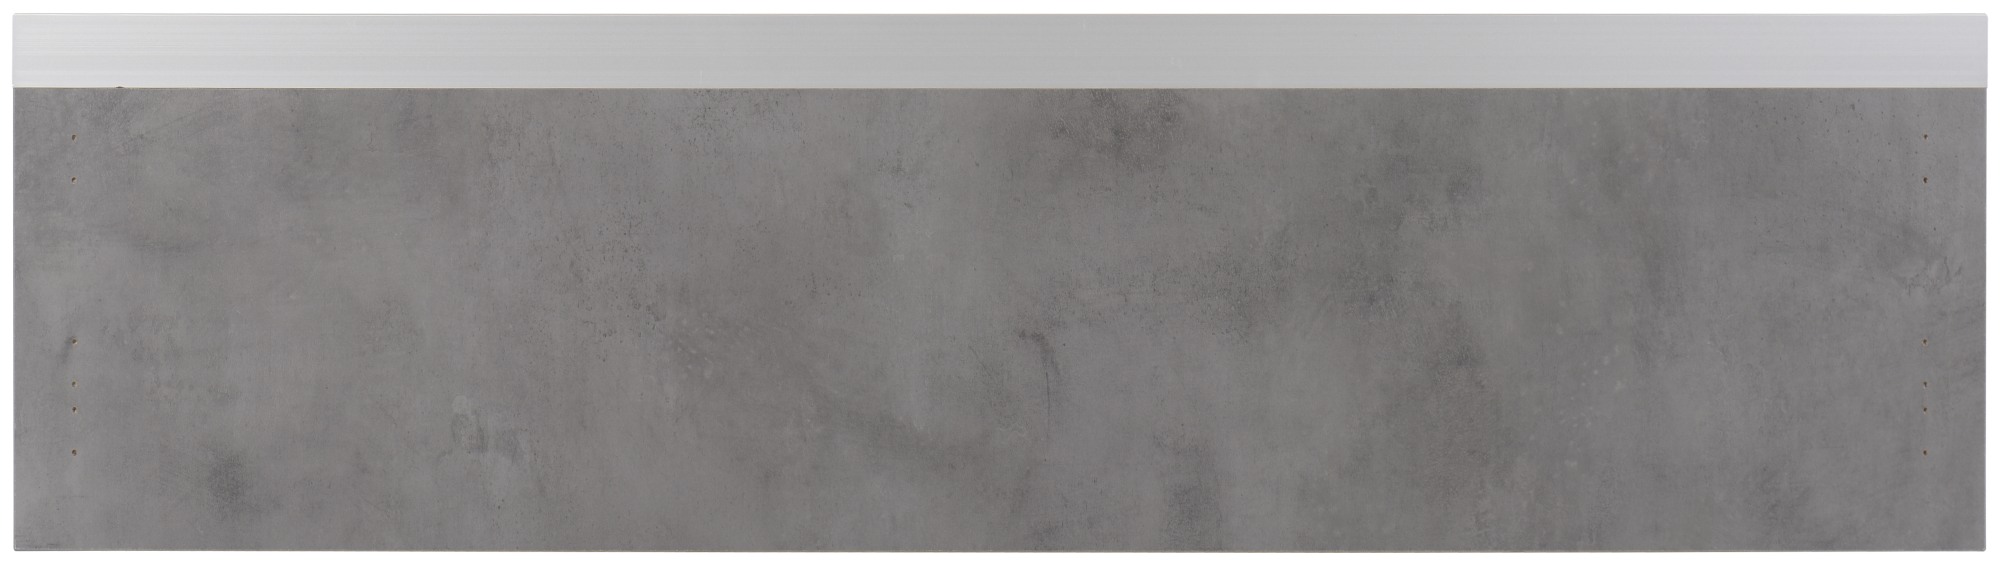 Frente para cajón mikonos cemento oscuro 89,7x25,3 cm